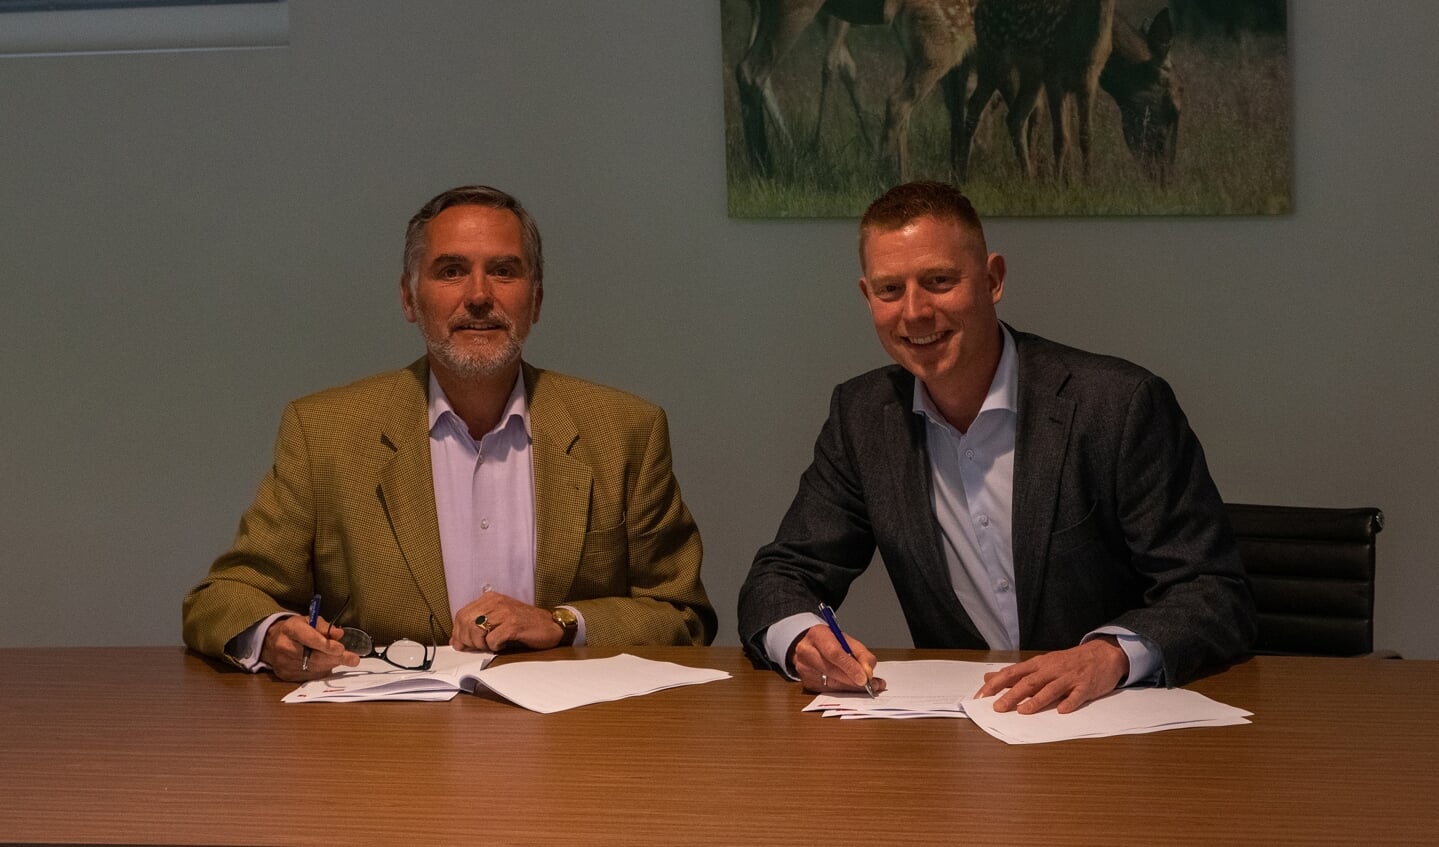 De heer Seger Emmanuel baron van Voorst tot Voorst (directeur Stichting Het Nationale Park De Hoge Veluwe, links) en Sjoerd Bakker (CEO Ticketcounter, rechts).